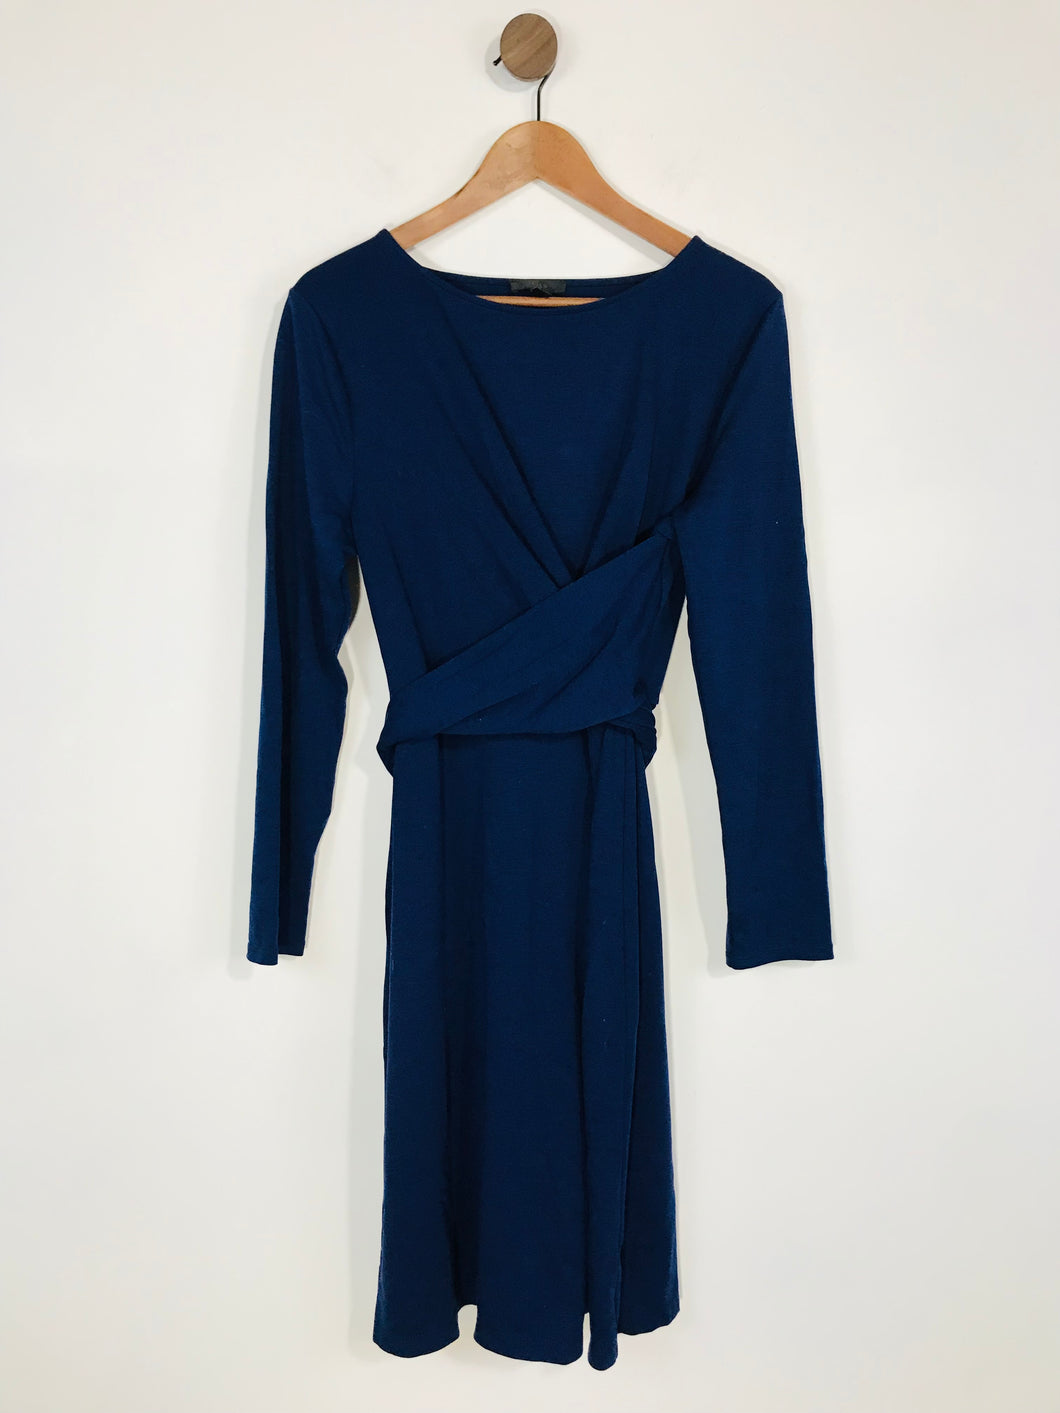 J.Crew Women's Long Sleeve Wrap Tie A-Line Dress | M UK12-14 | Blue